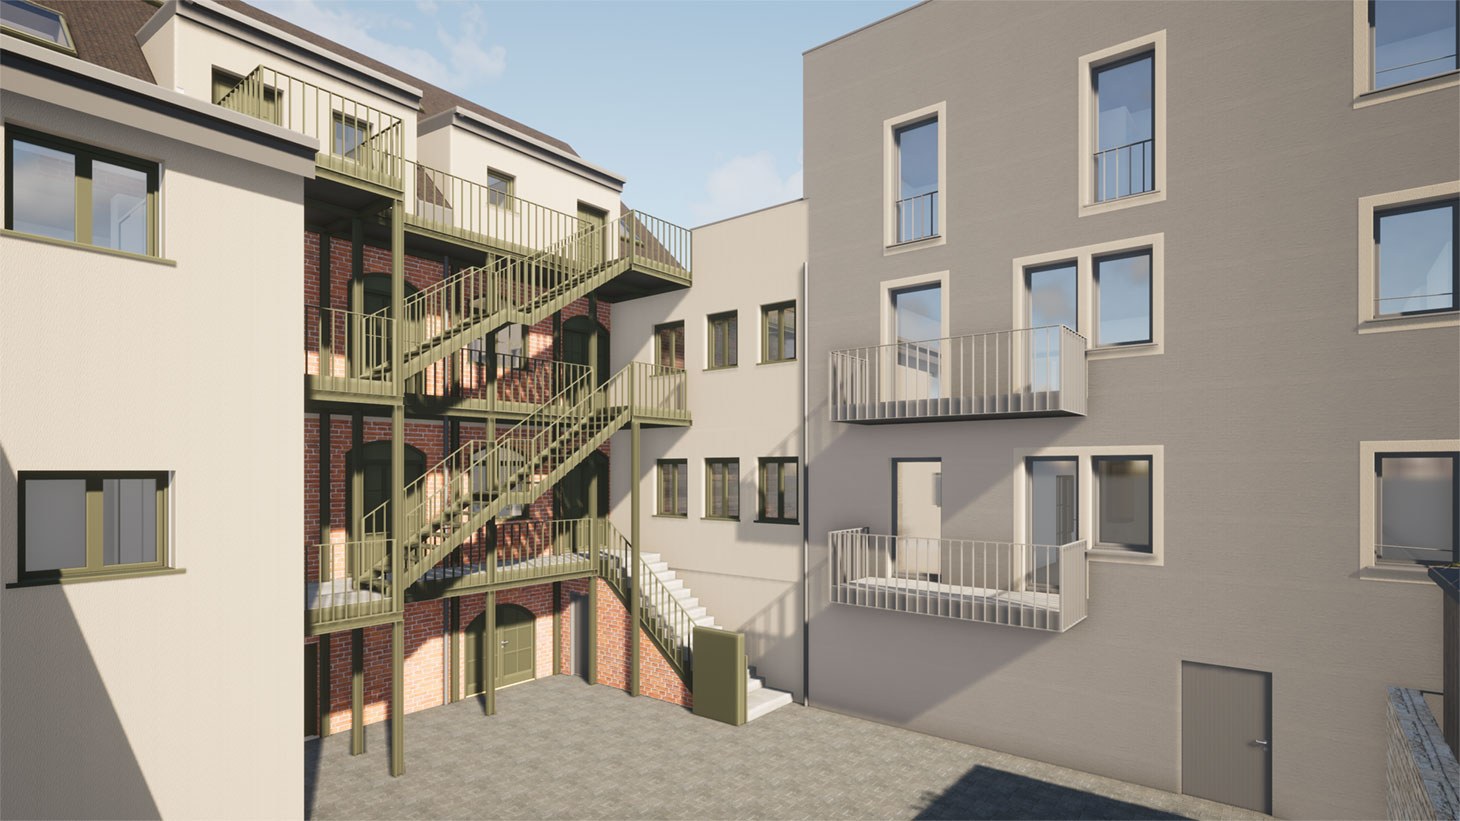 Bauantrag genehmigt – es kann weitergehen! Wohnbauten in Rastatt